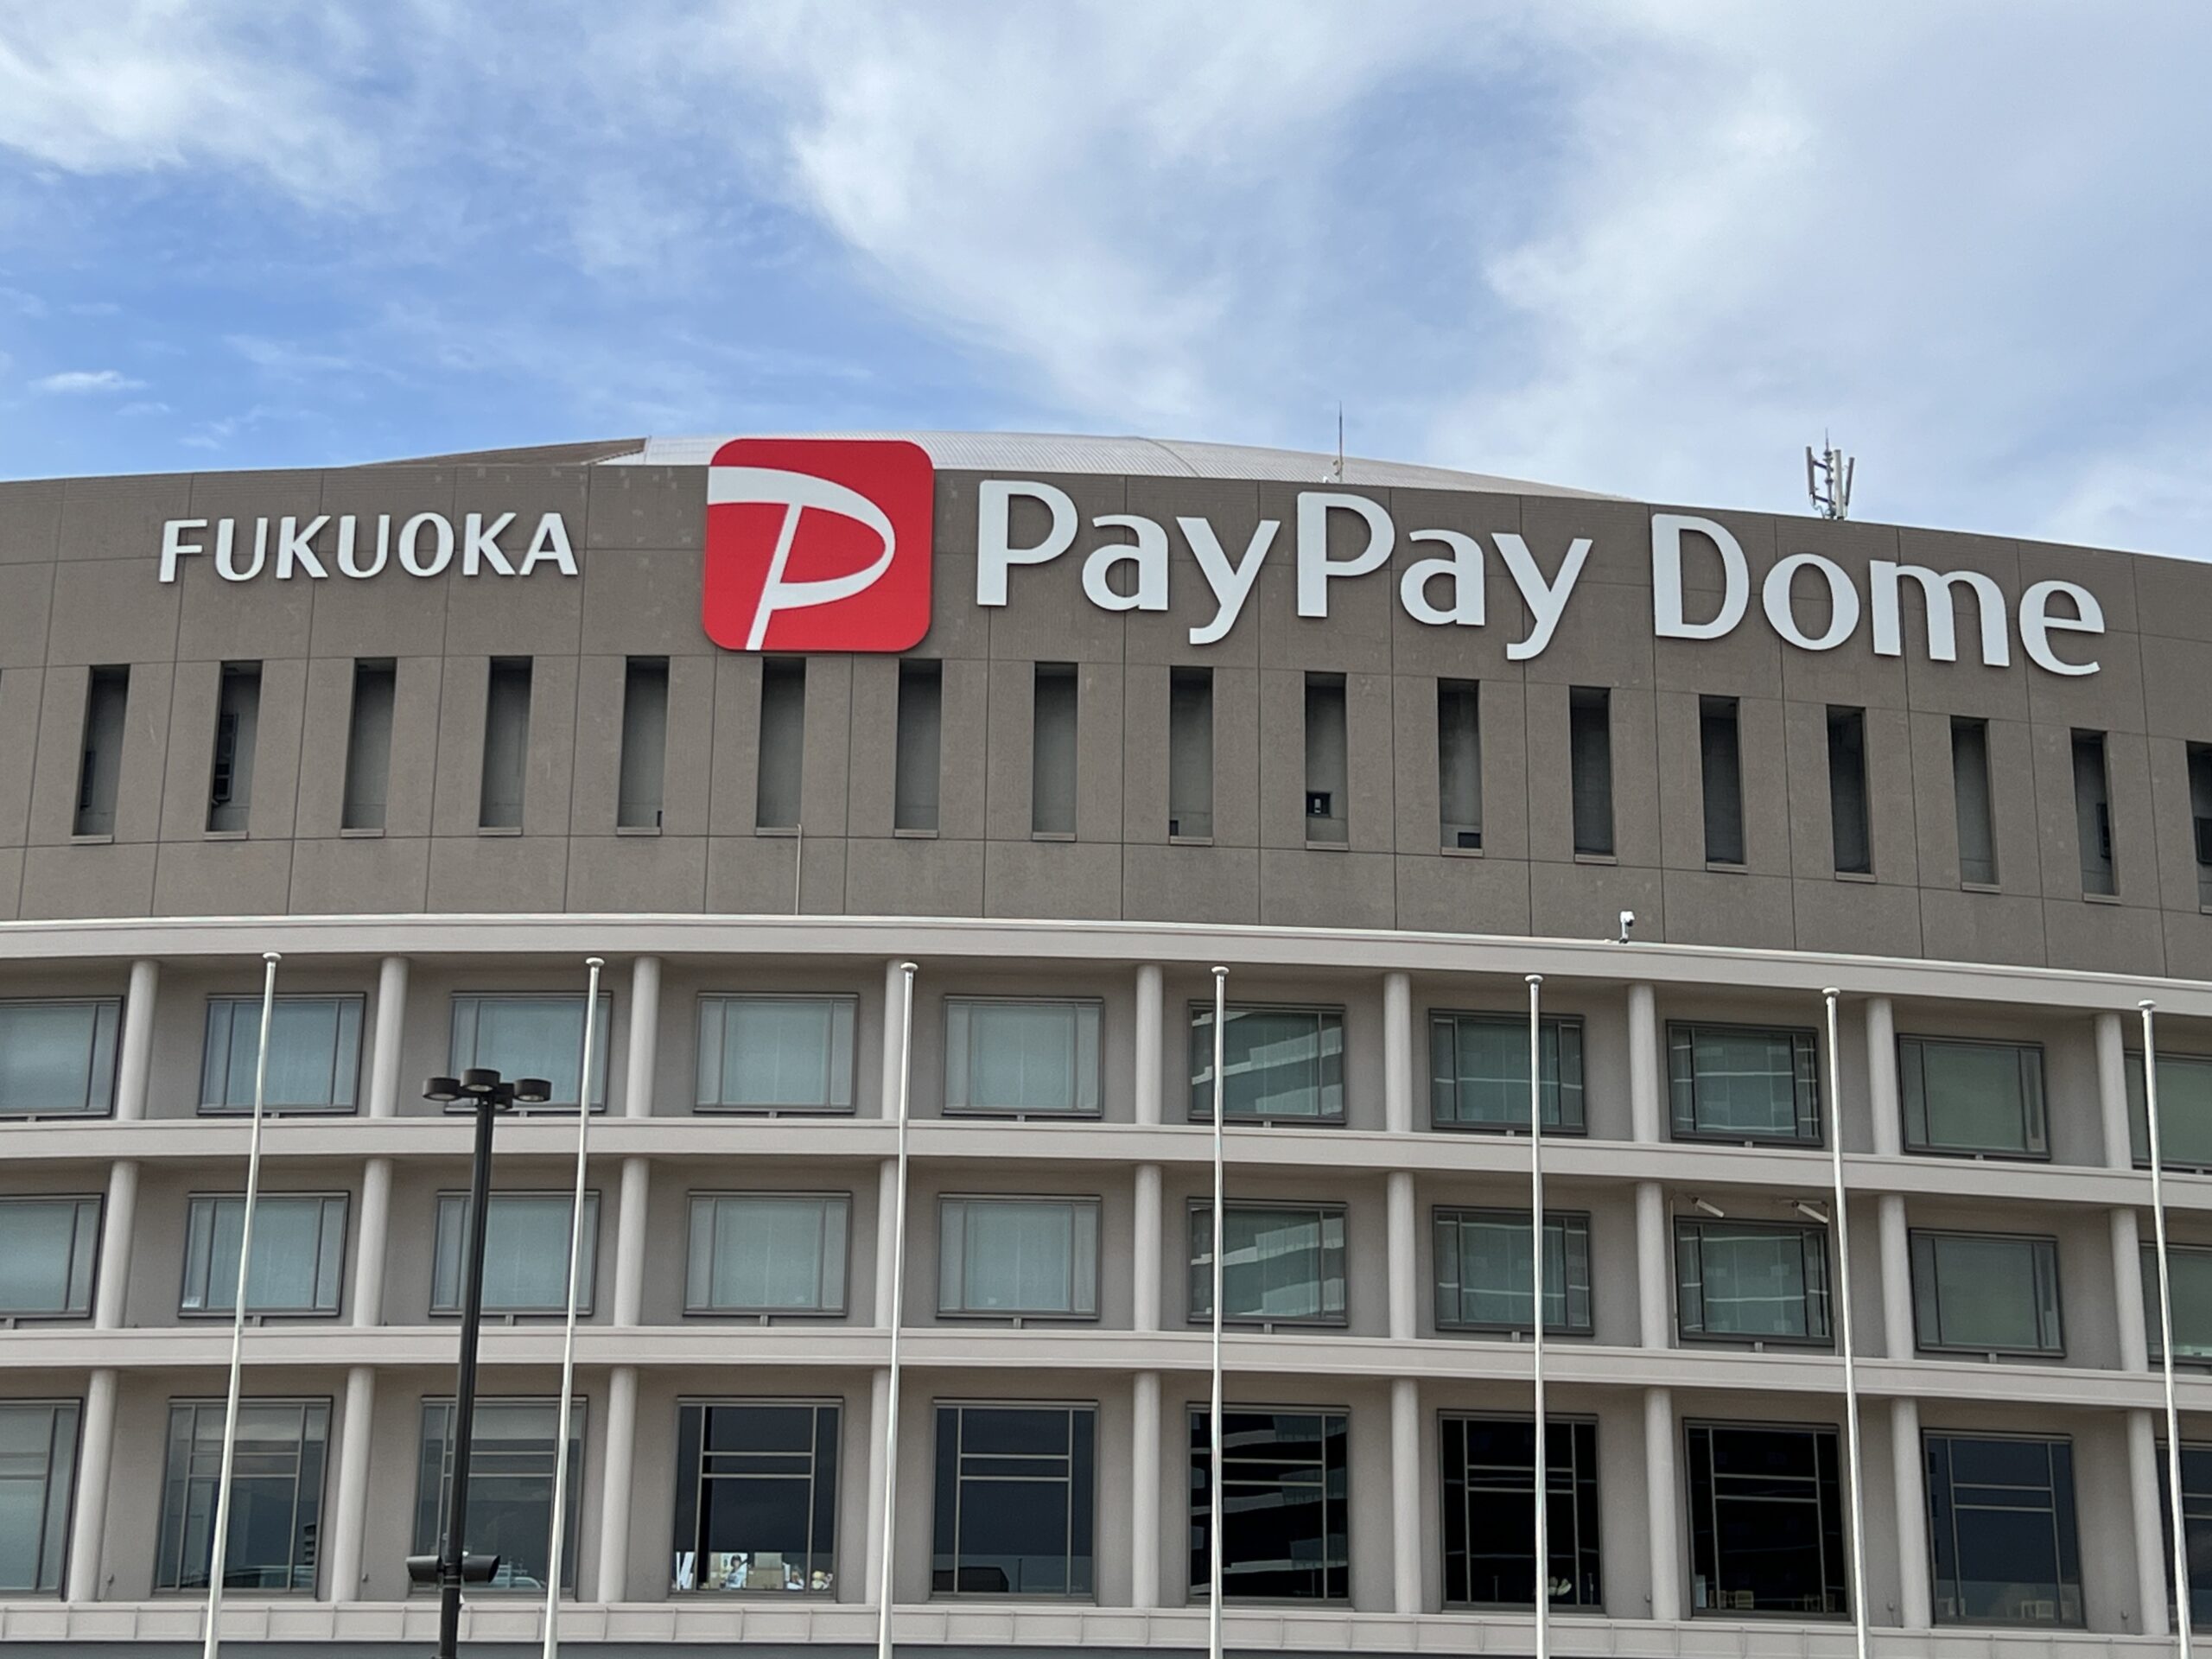 fukuoka-paypay-dome-signboard